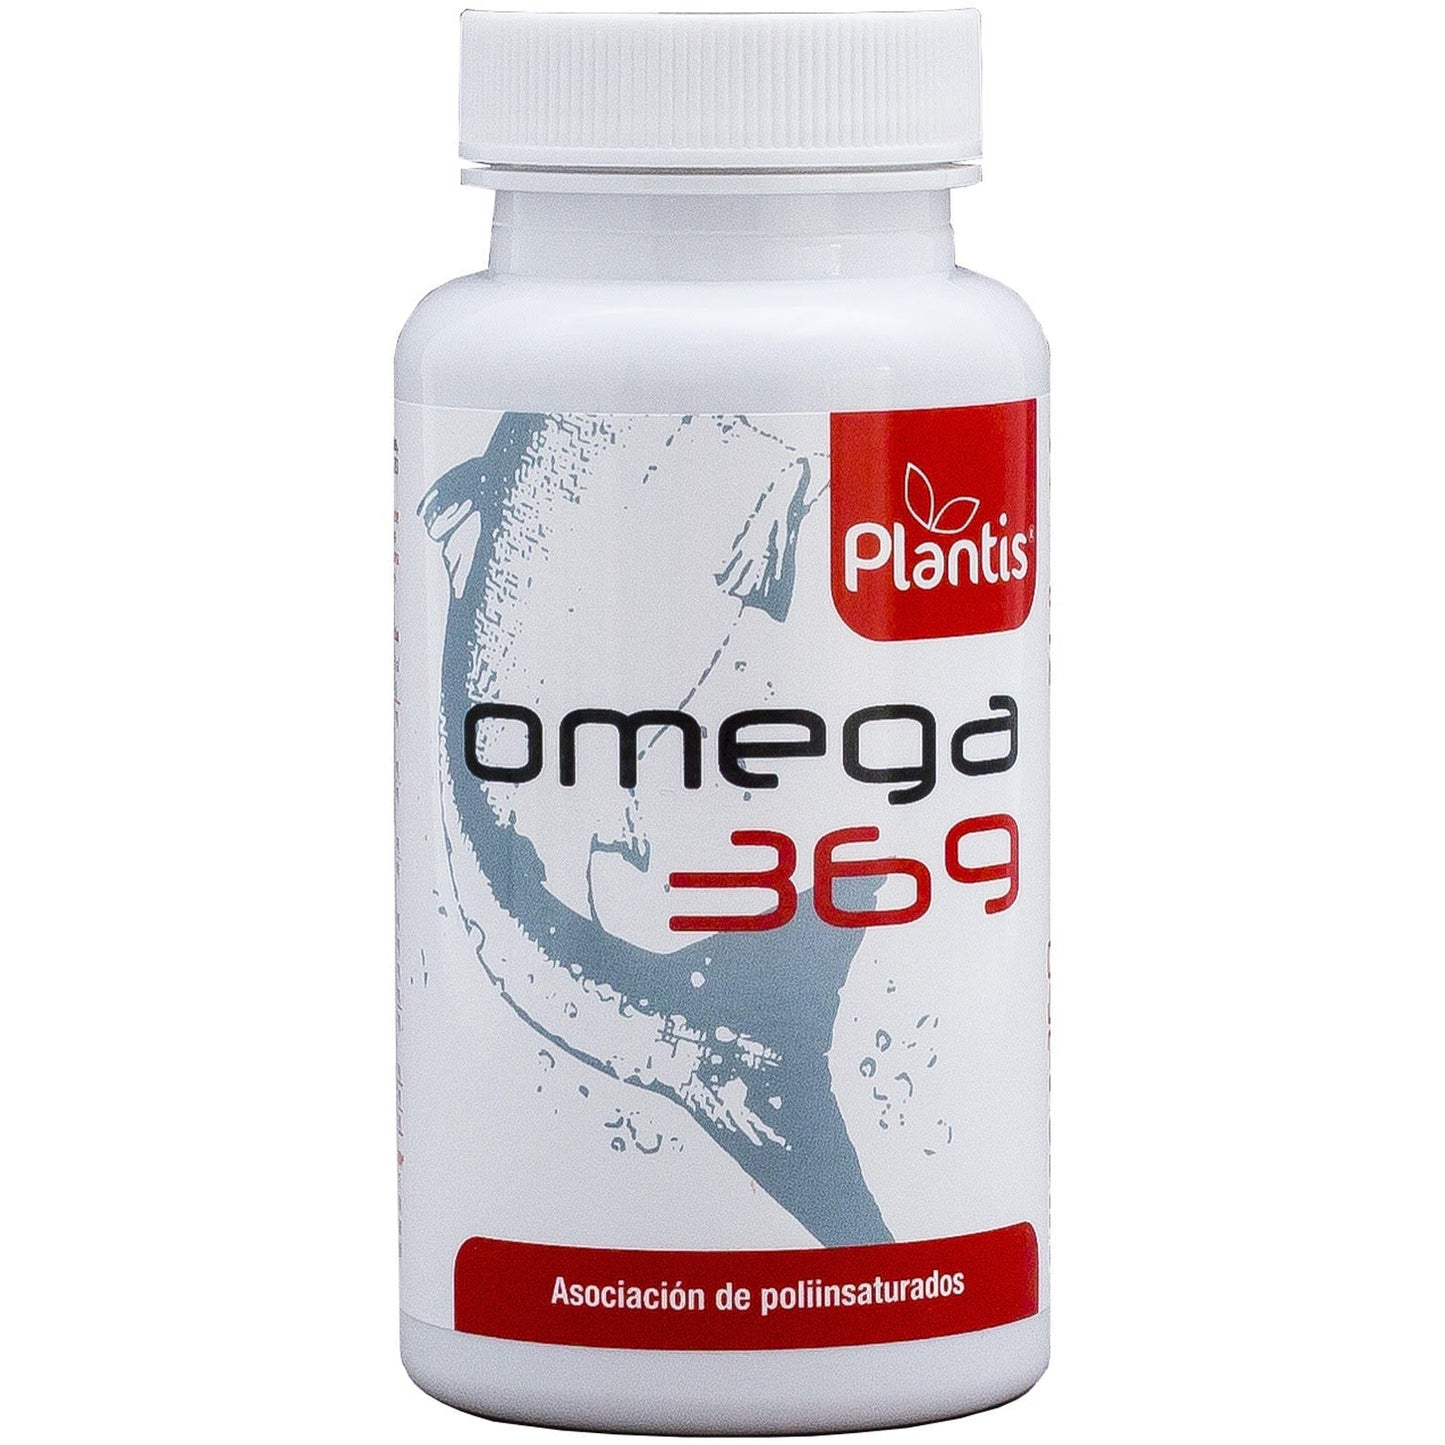 Omega 3 6 9 Capsulas | Artesania Agricola - Dietetica Ferrer